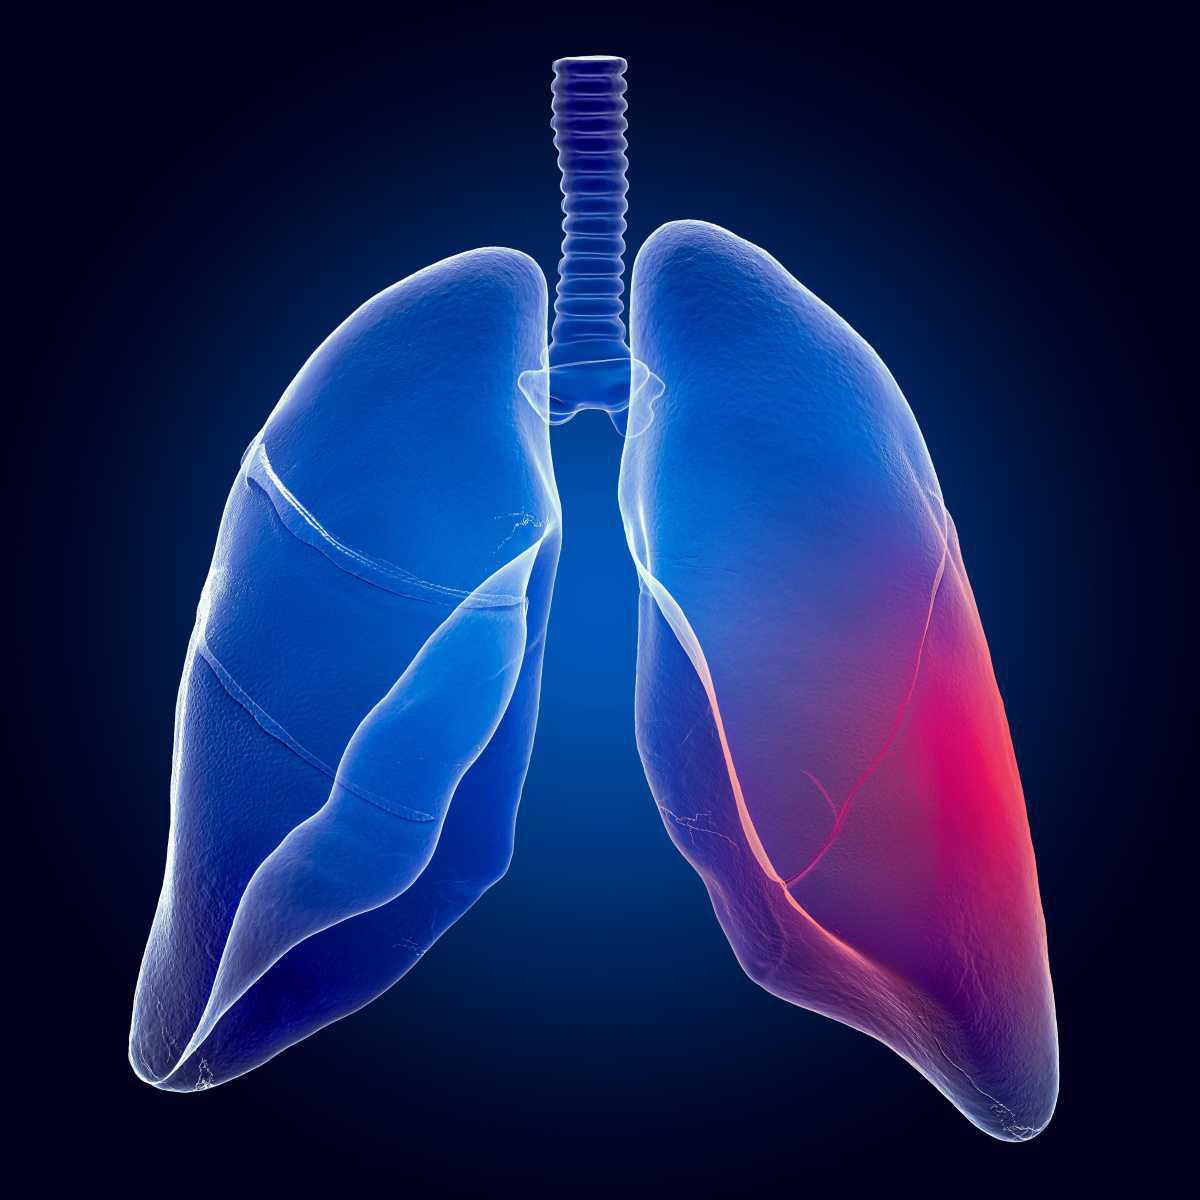 Fibrose pulmonar